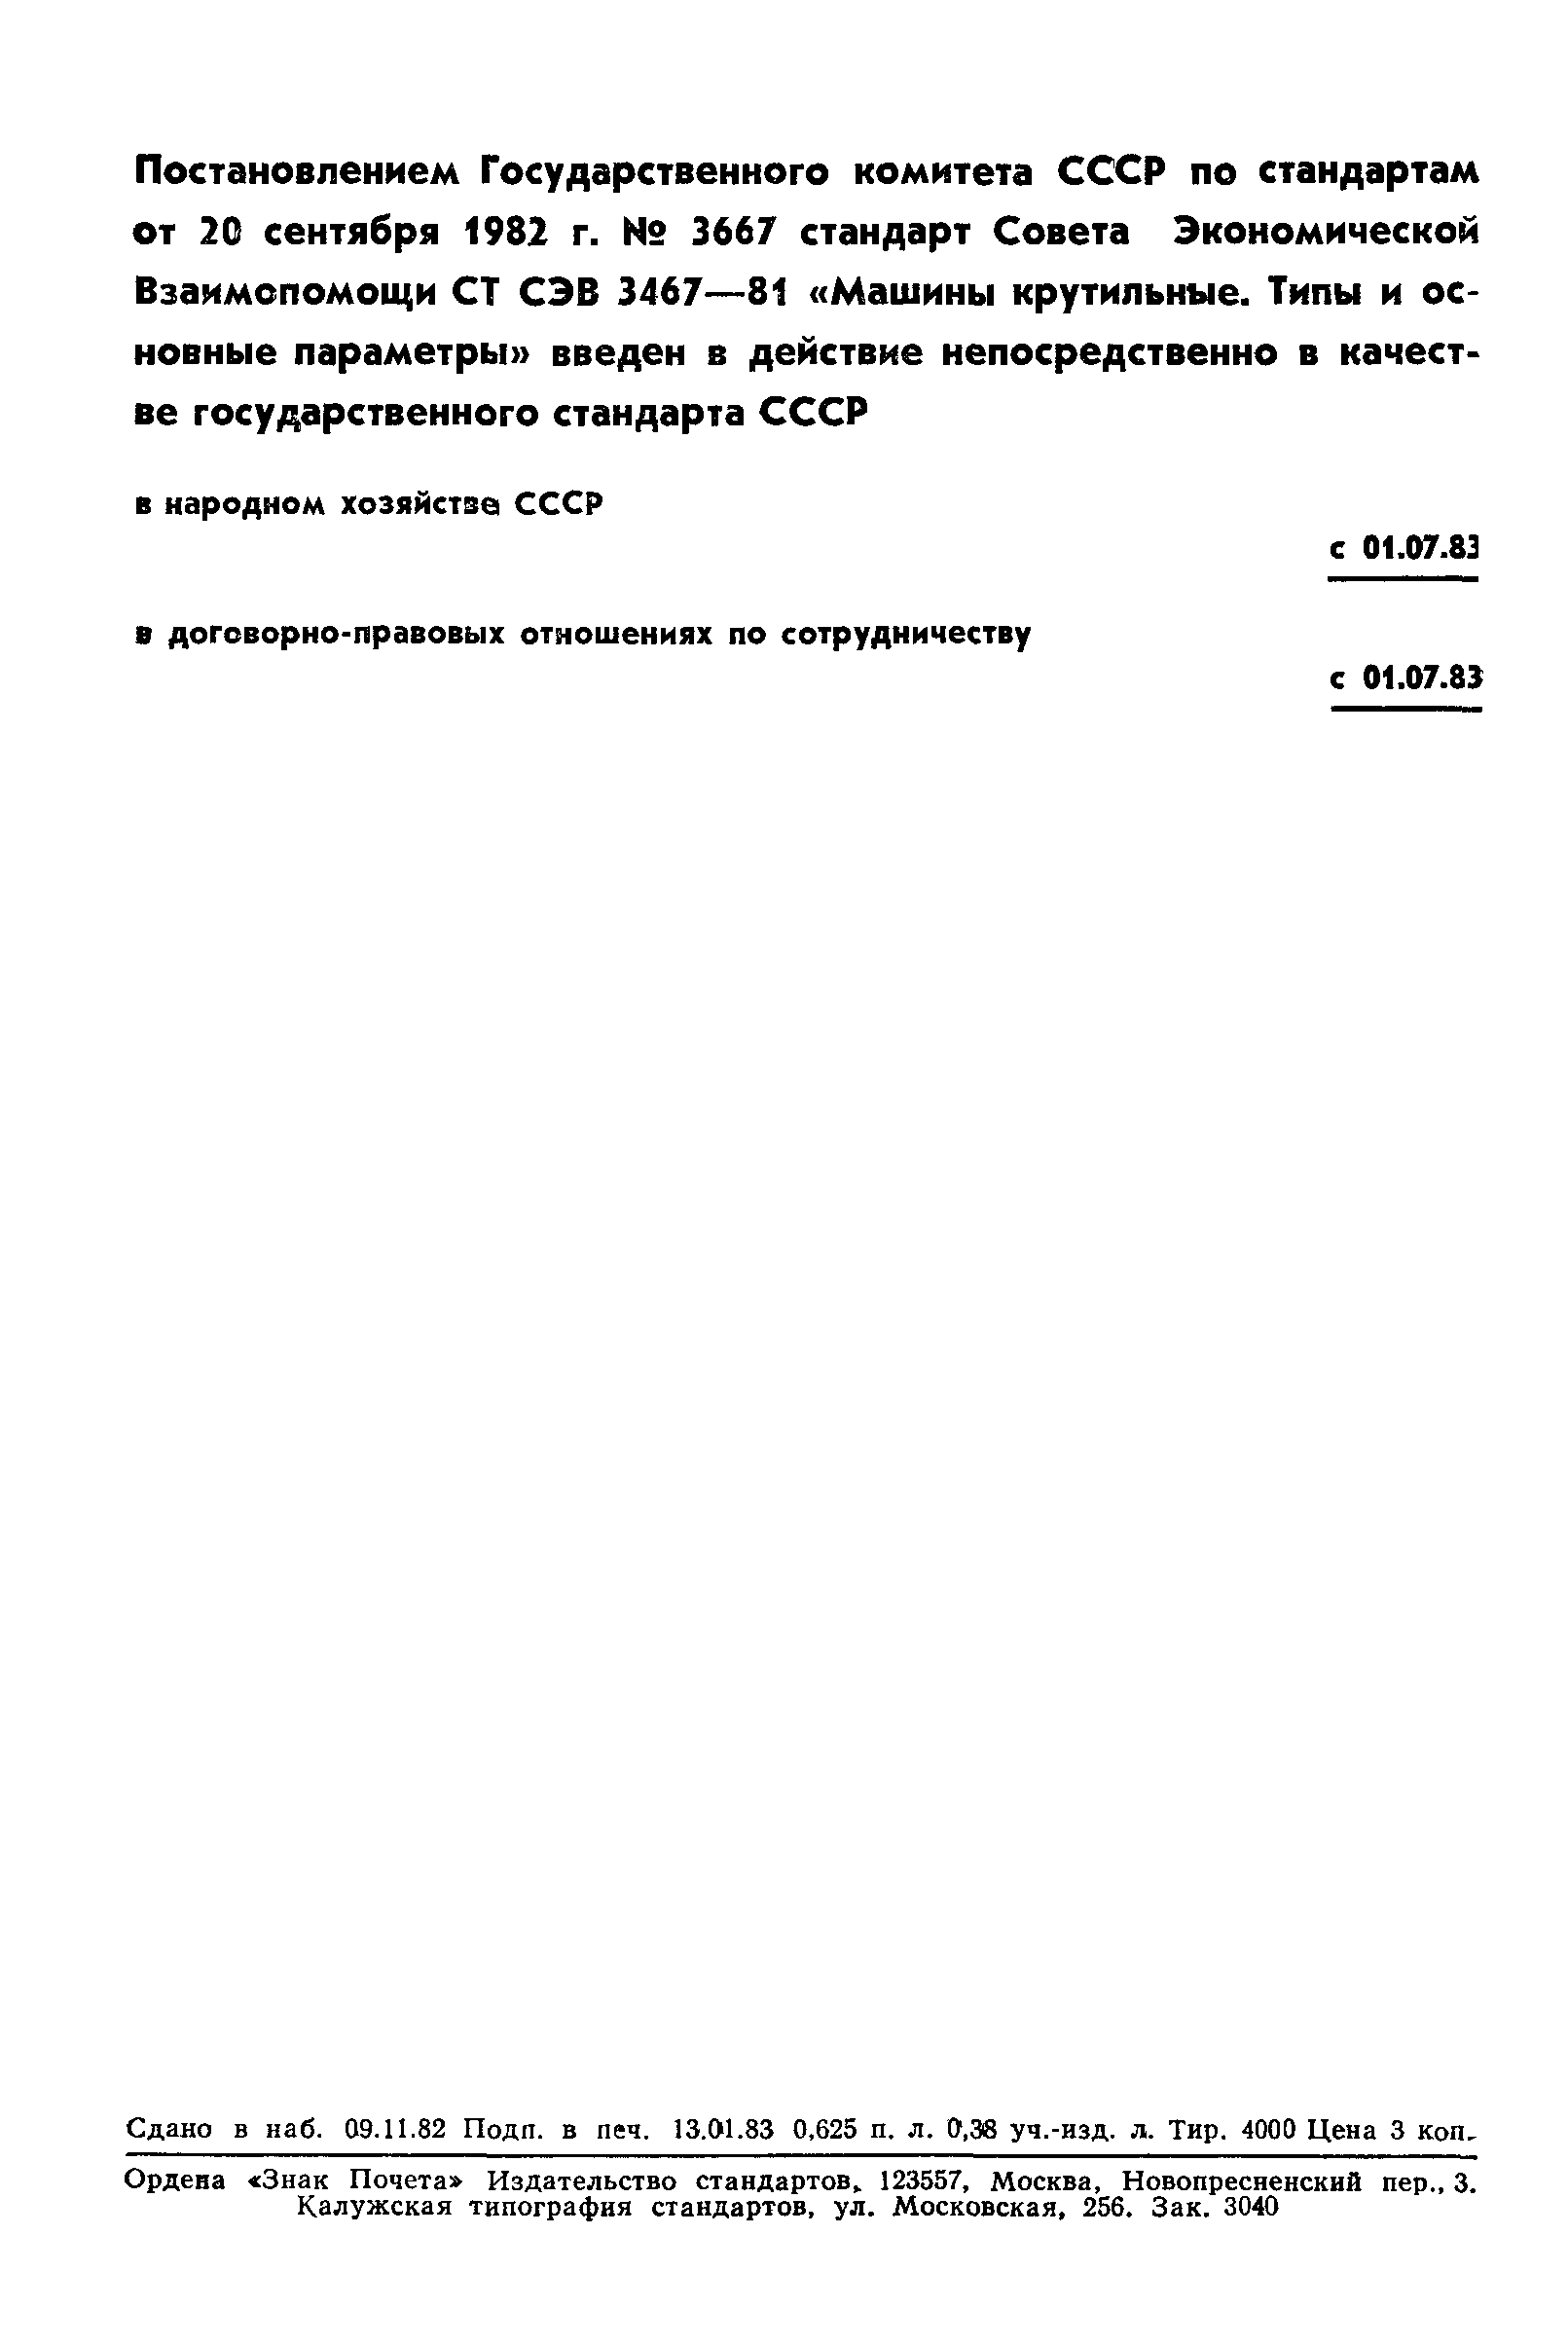 СТ СЭВ 3467-81